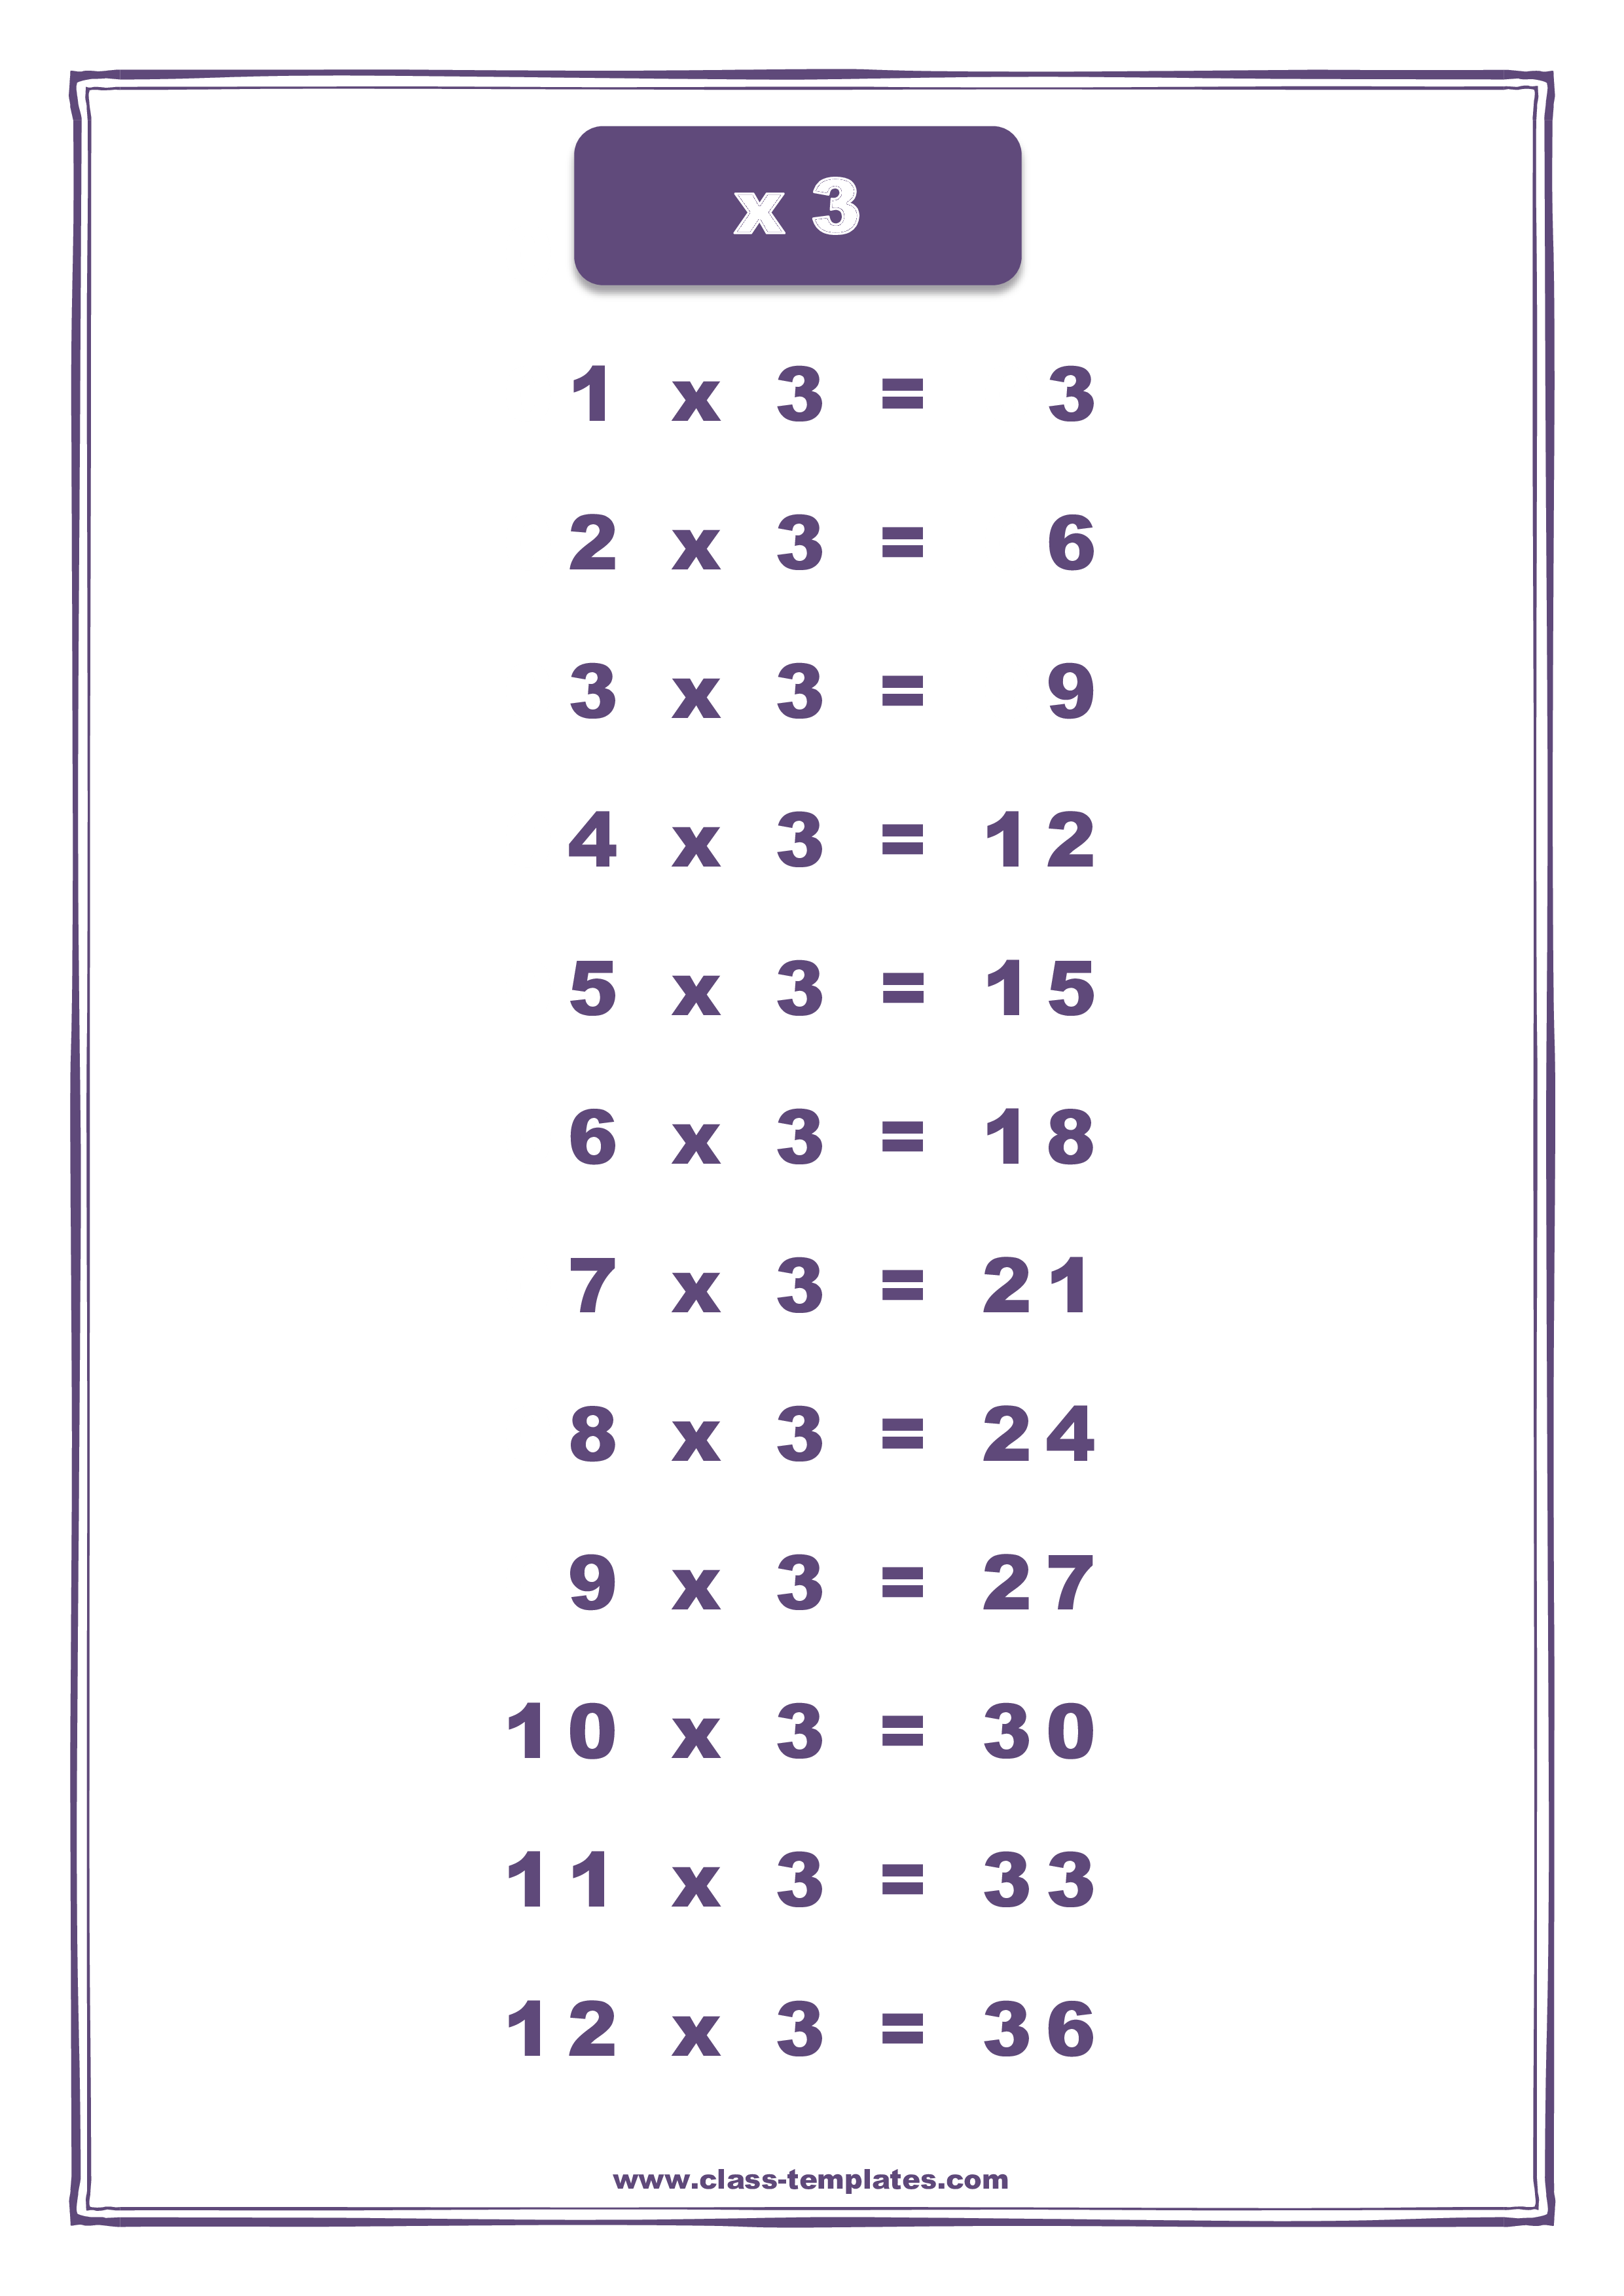 x3 times table chart voorbeeld afbeelding 